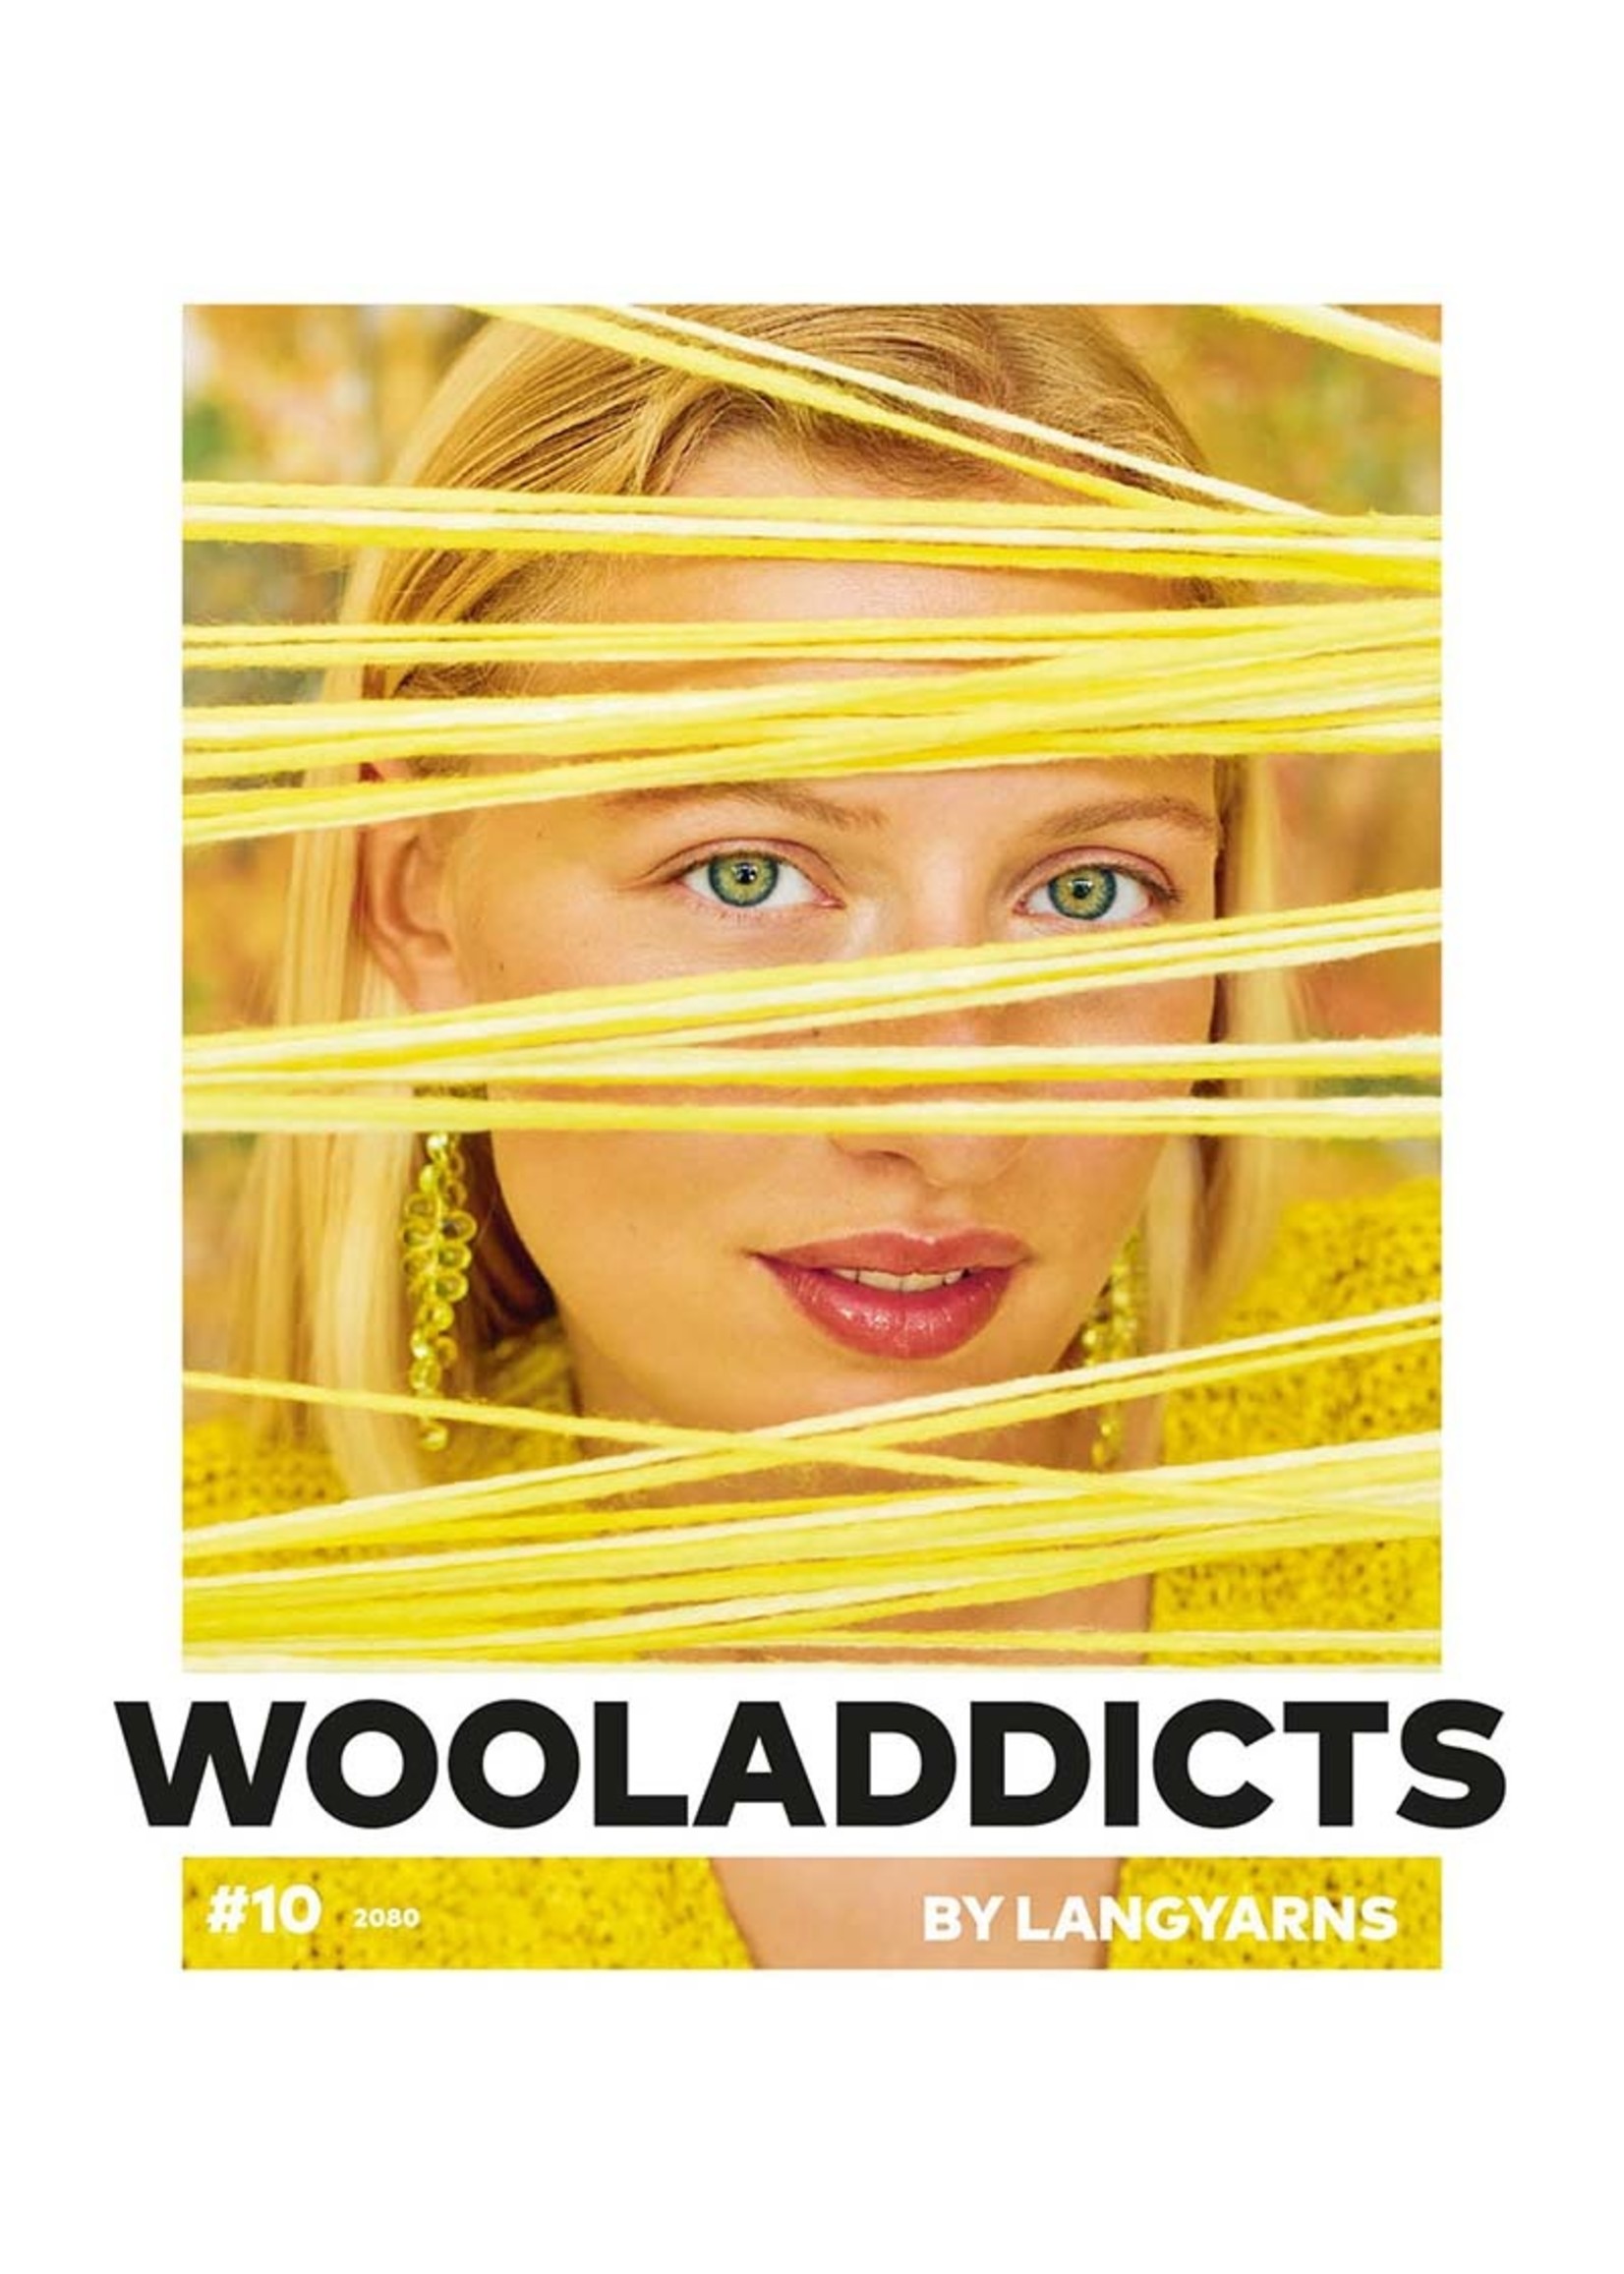 WoolAddicts Wooladdicts #10